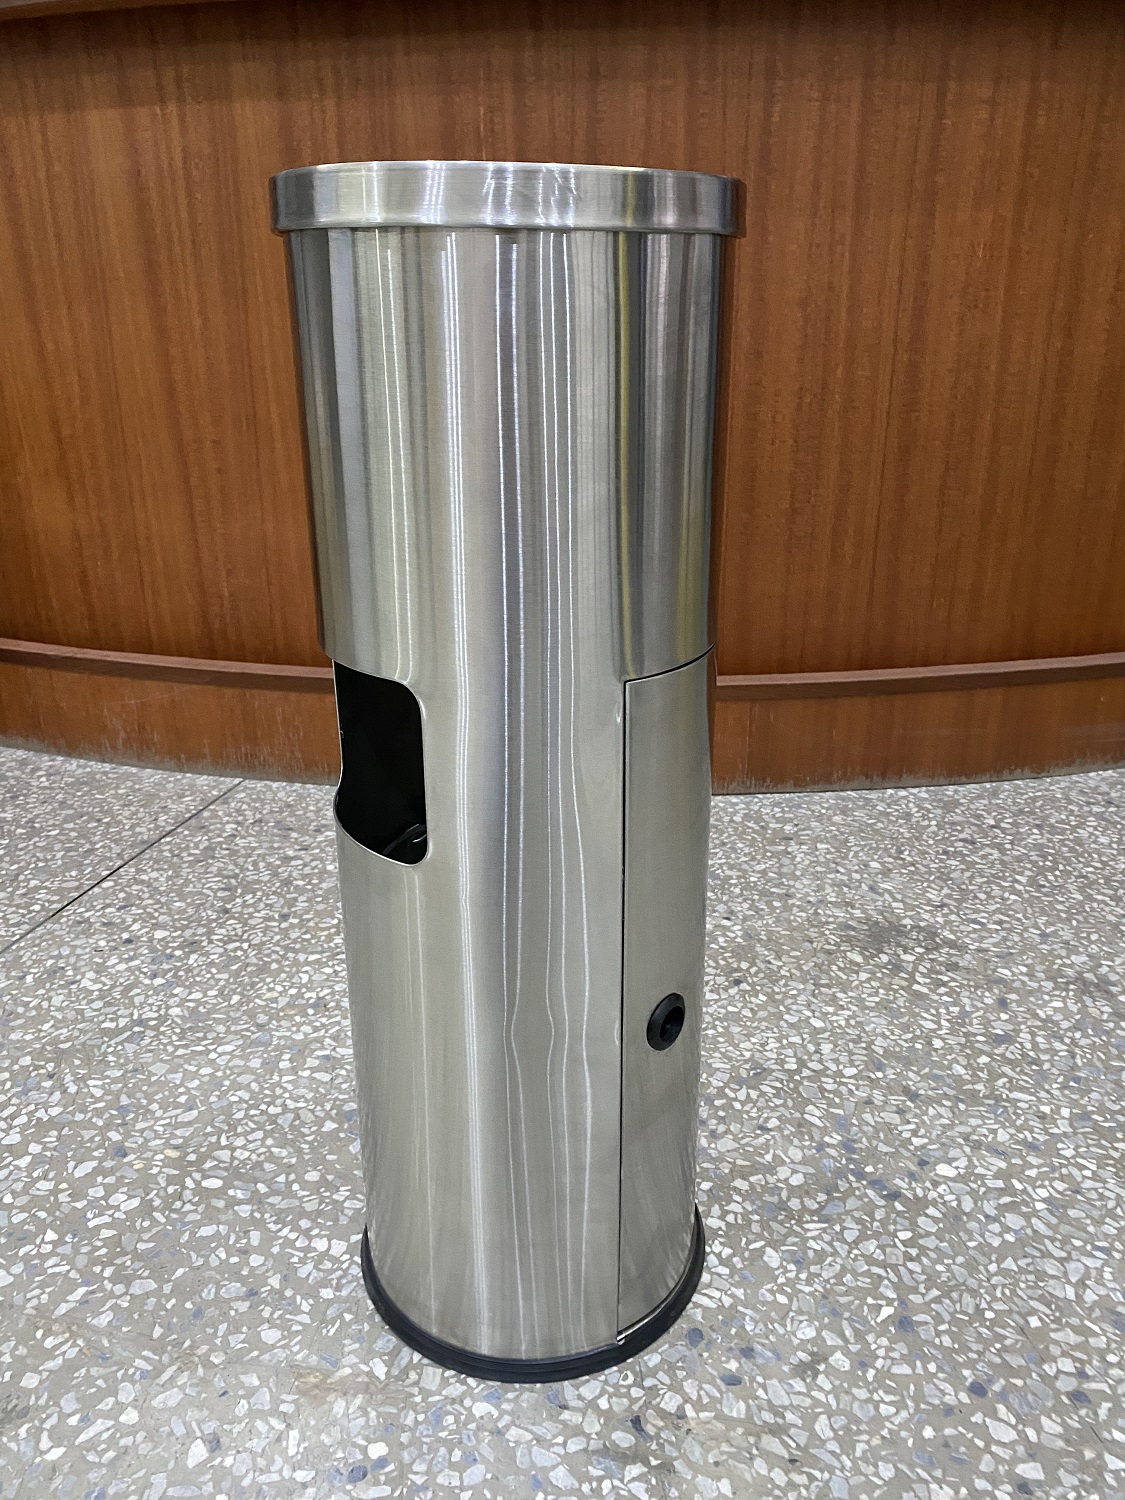 Dispenser Tisu terlaris dengan bahan stainless steel